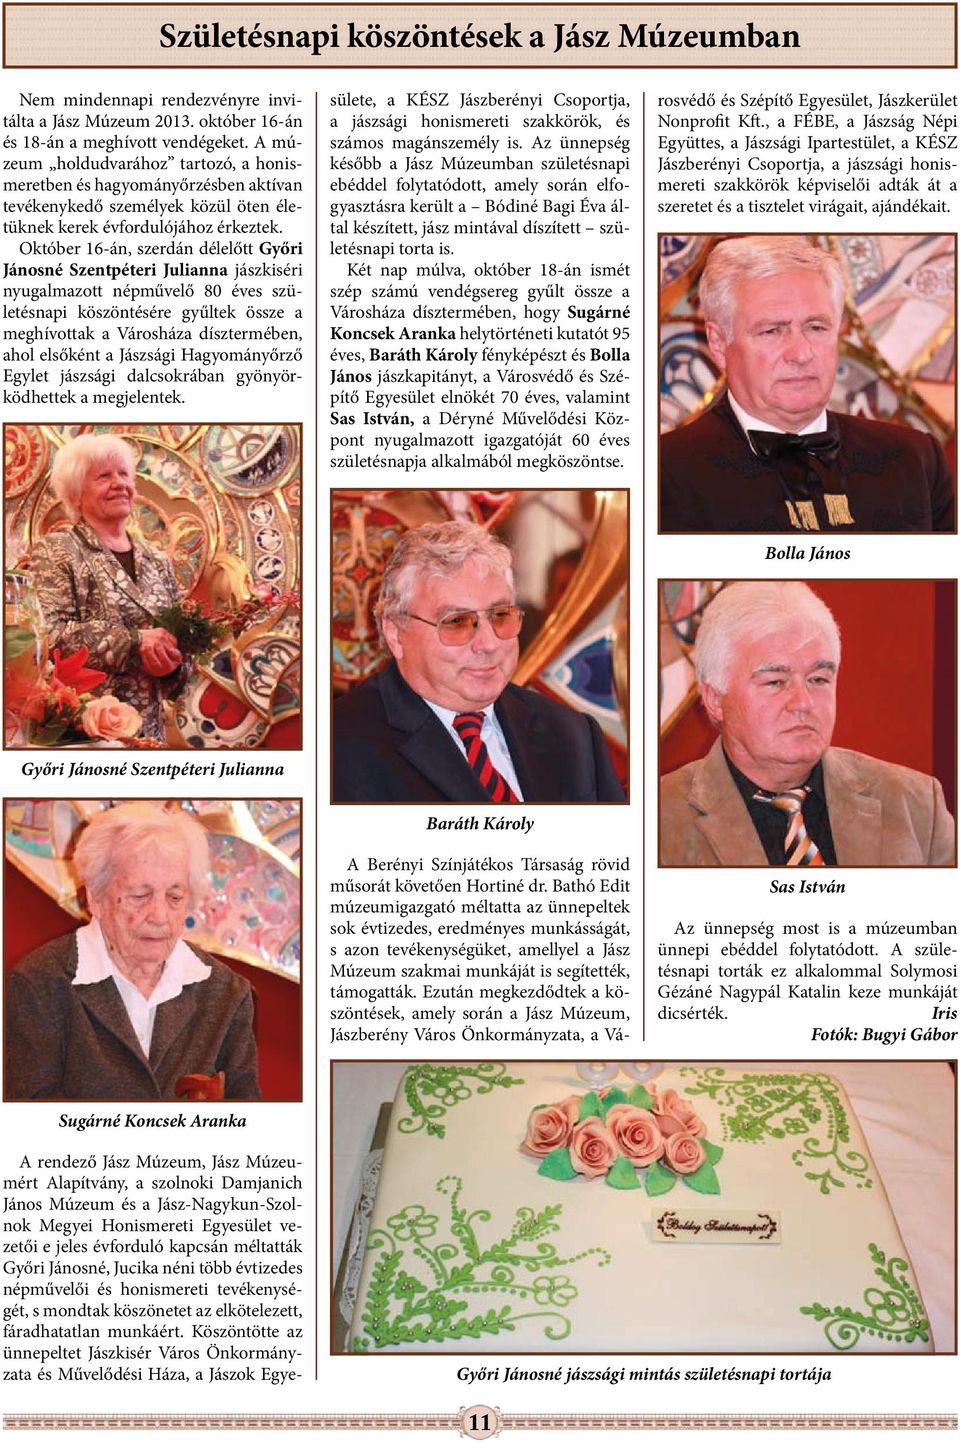 Október 16-án, szerdán délelőtt Győri Jánosné Szentpéteri Julianna jászkiséri nyugalmazott népművelő 80 éves születésnapi köszöntésére gyűltek össze a meghívottak a Városháza dísztermében, ahol